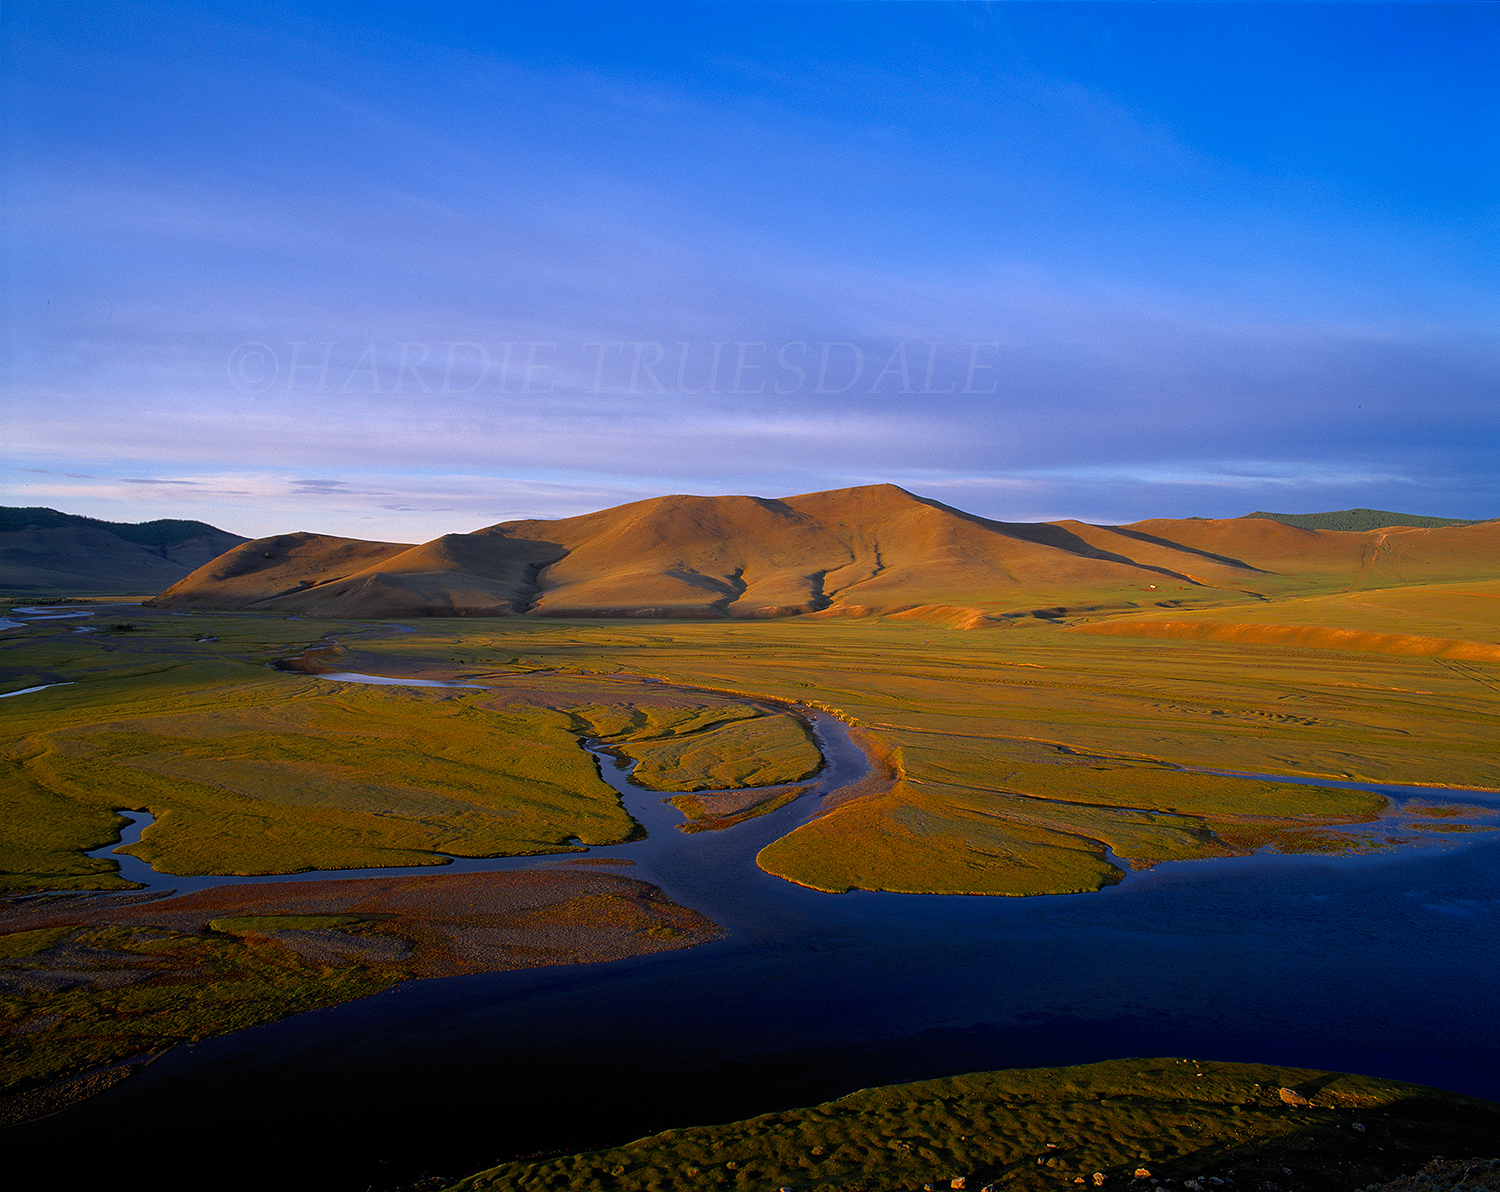  Mgl#2 "Orkhon River",&nbsp; Kharakhorum, Mongolia  